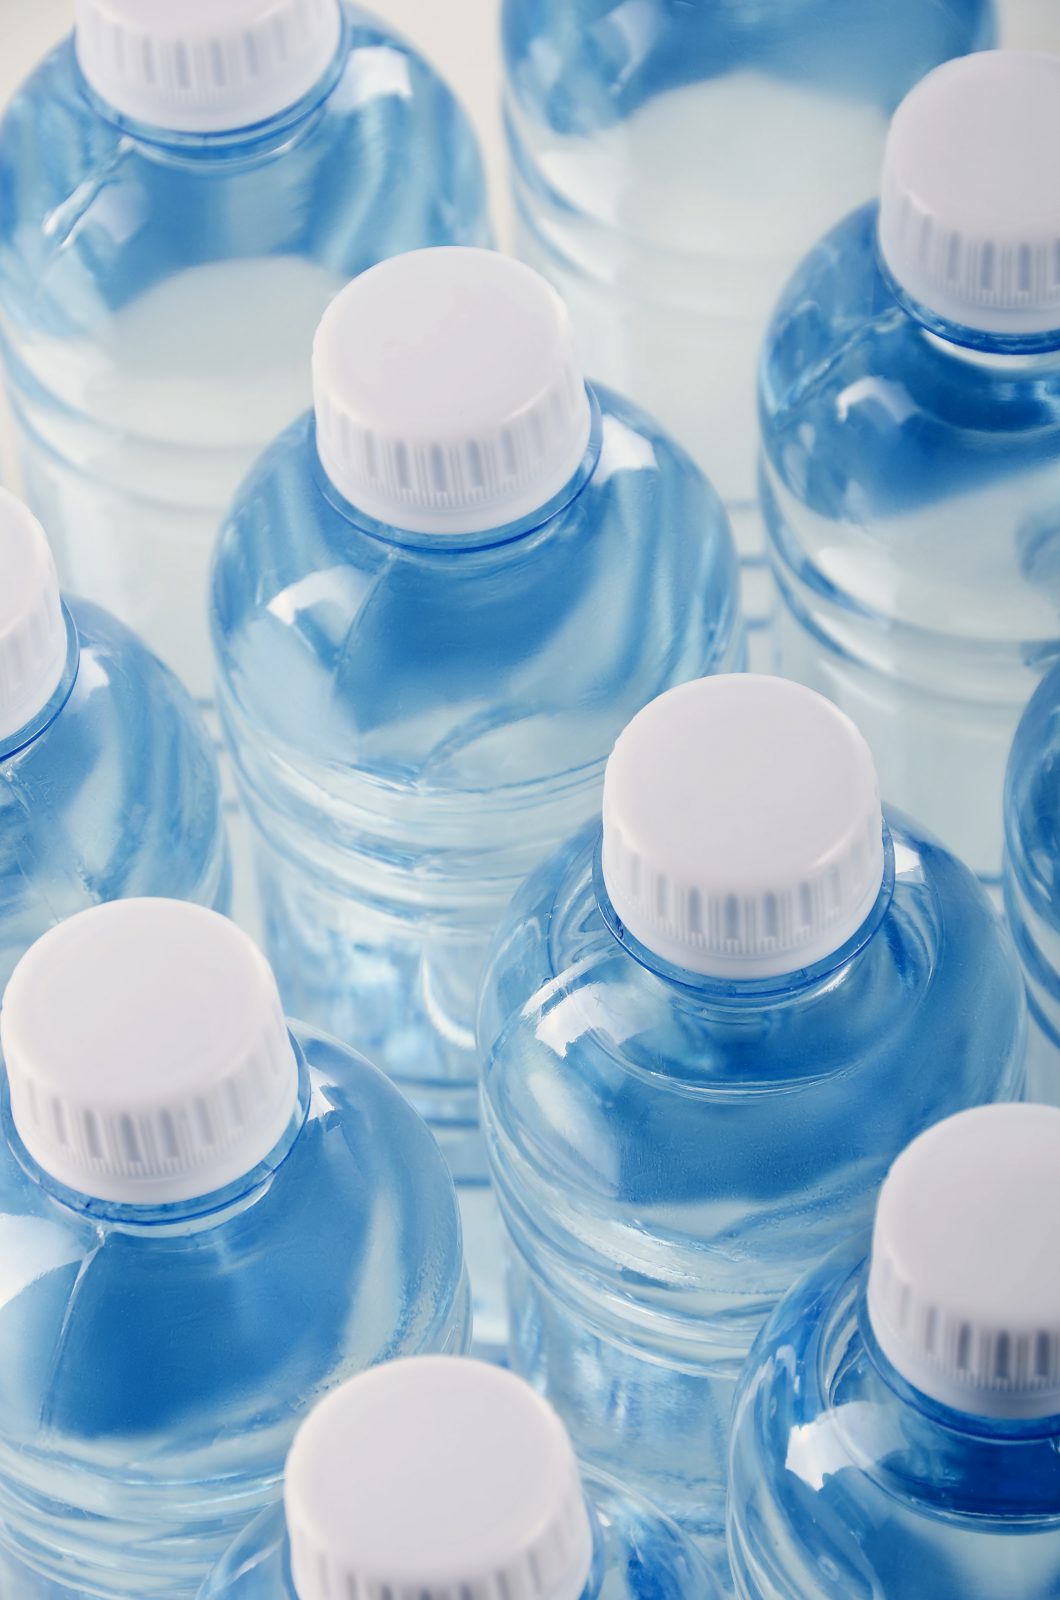 Drummondville cessera la vente d’eau embouteillée dans ses édifices